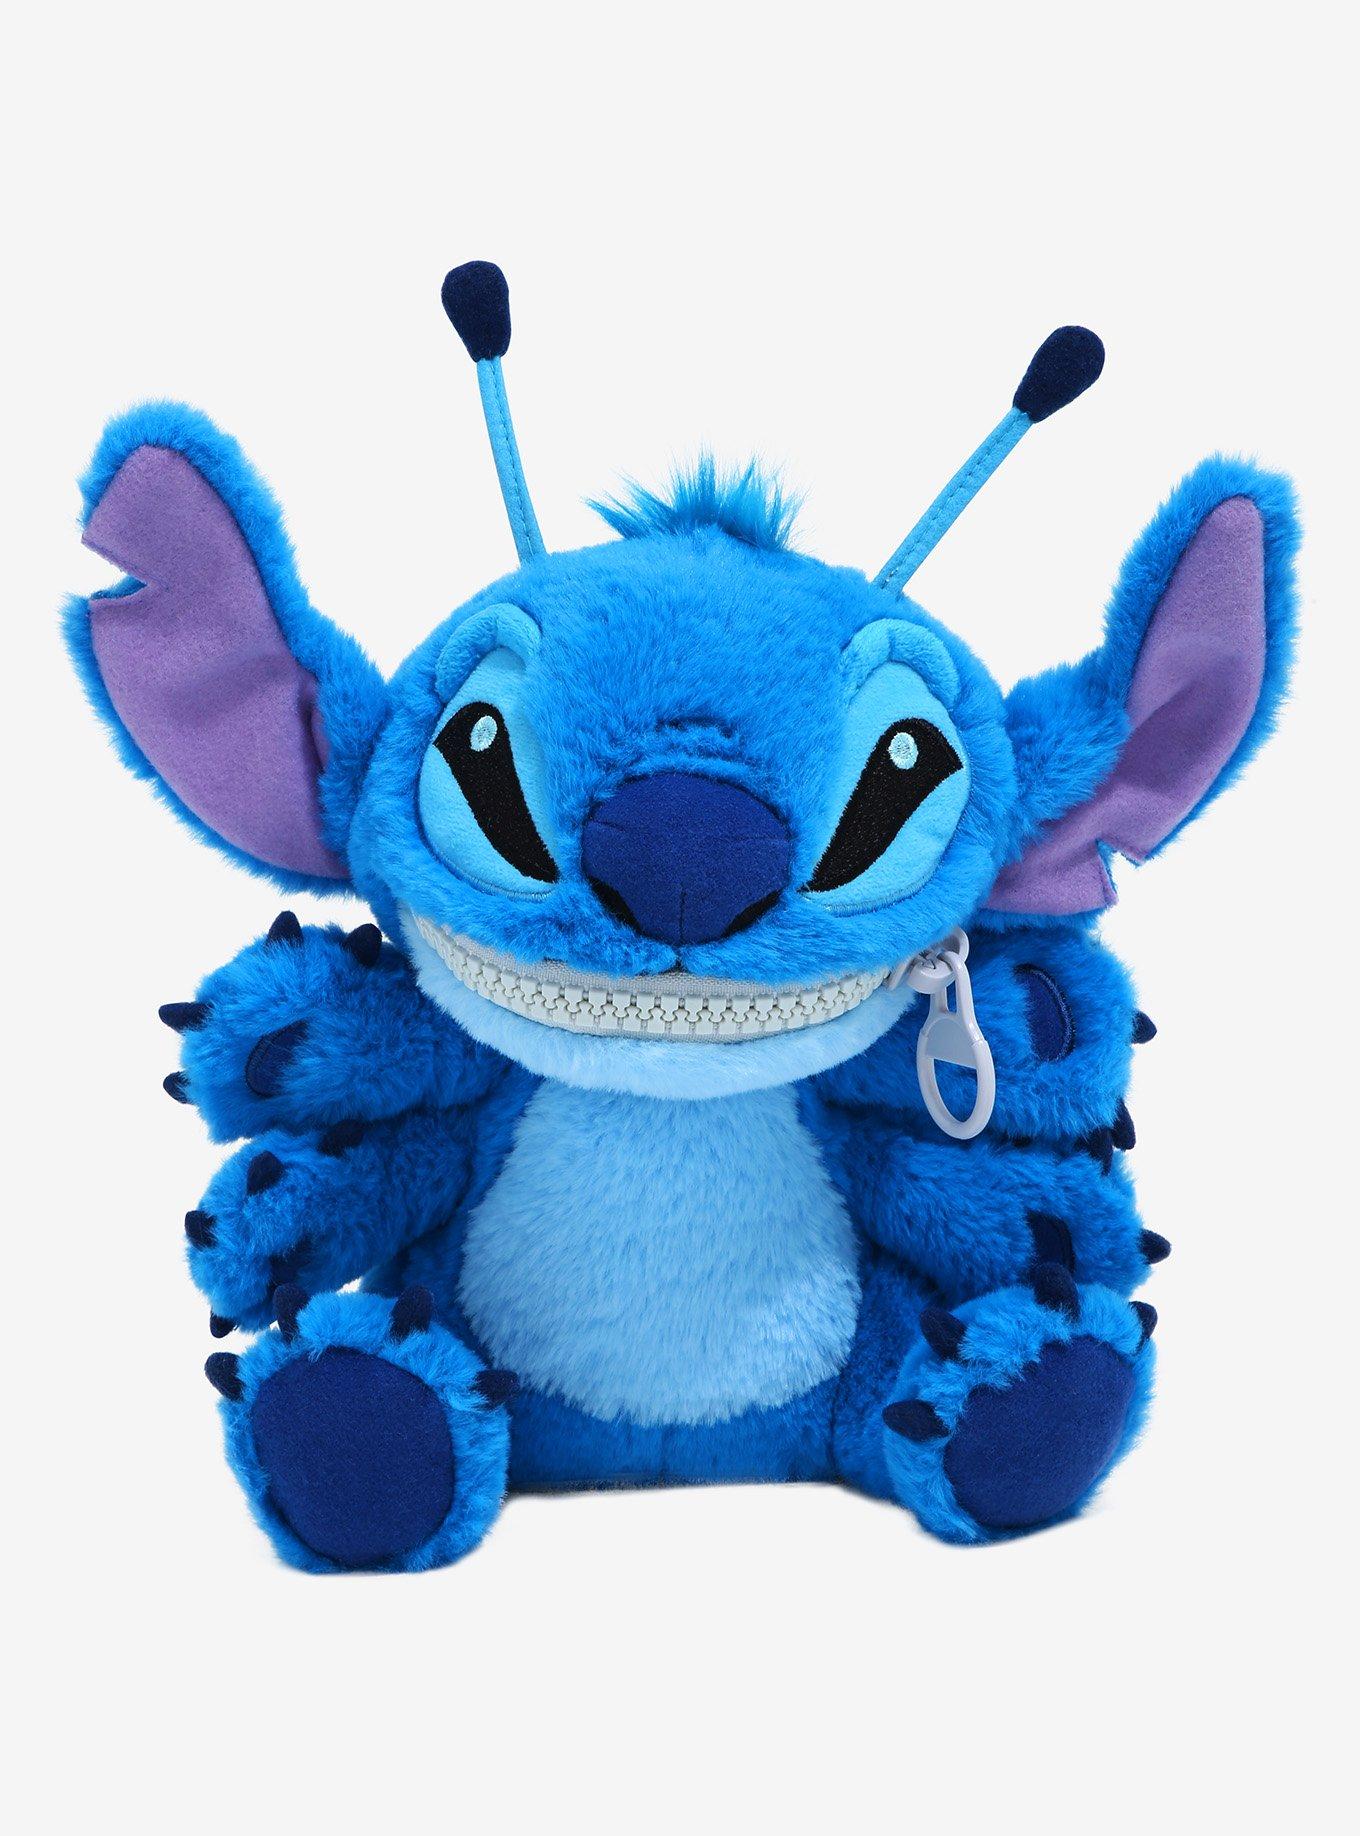 TDR - Fluffy Plushy Plush Toy x ScrumpDefault Title  Lilo and stitch  merchandise, Lilo and stitch, Stitch stuffed animal